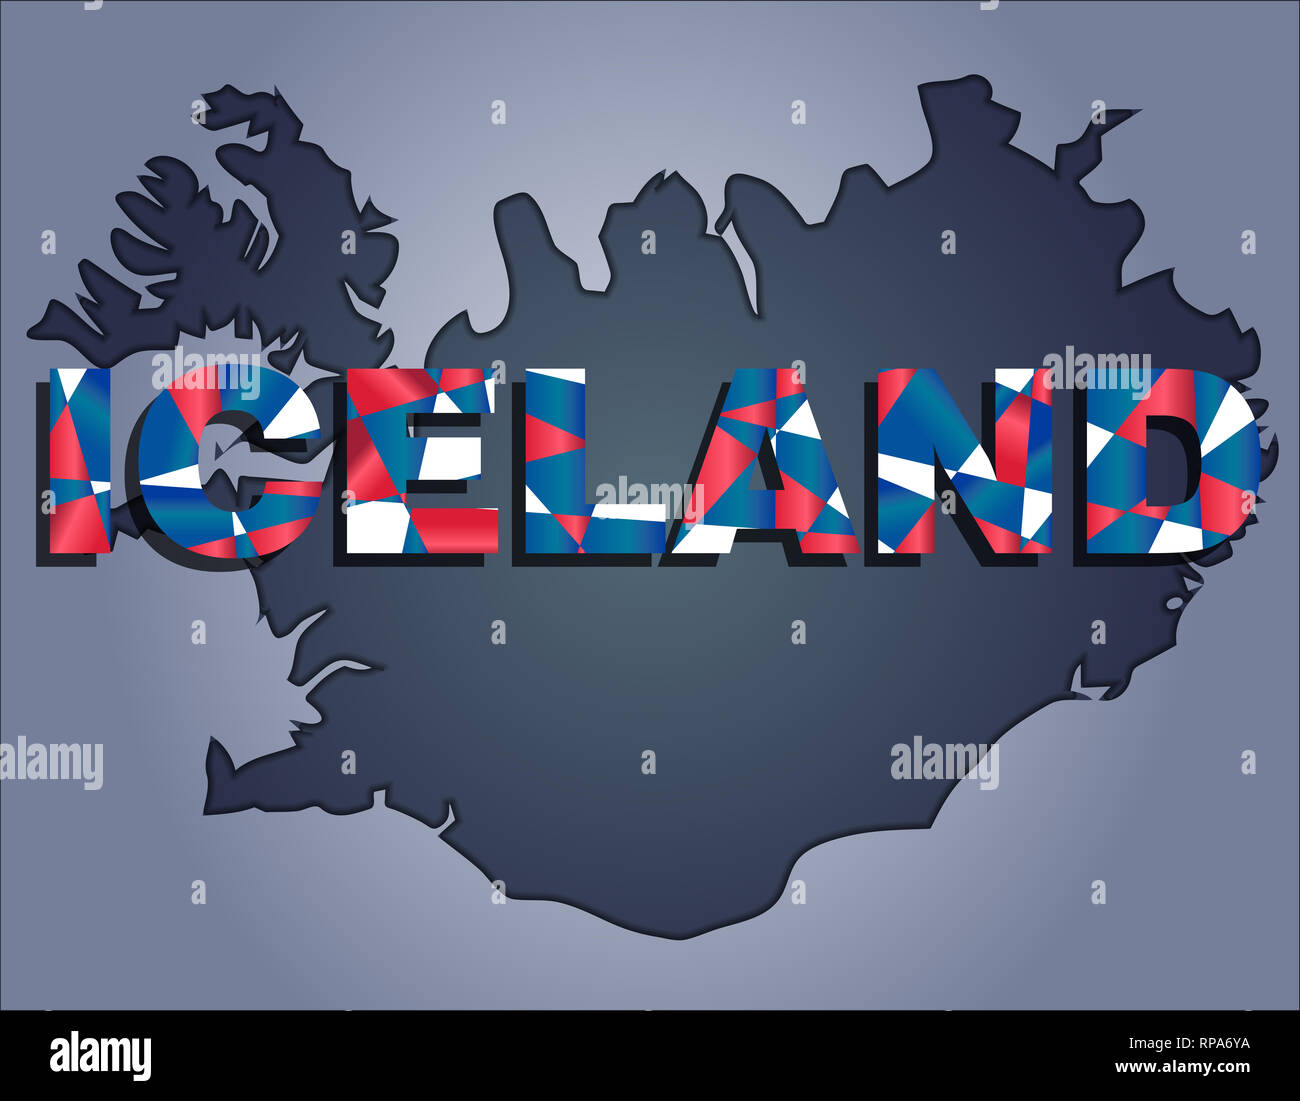 Die Konturen des Territoriums von Island in grauen Farben und Word Island in den Farben der oficial Flagge, Rot, Blau und Weiß Stockfoto